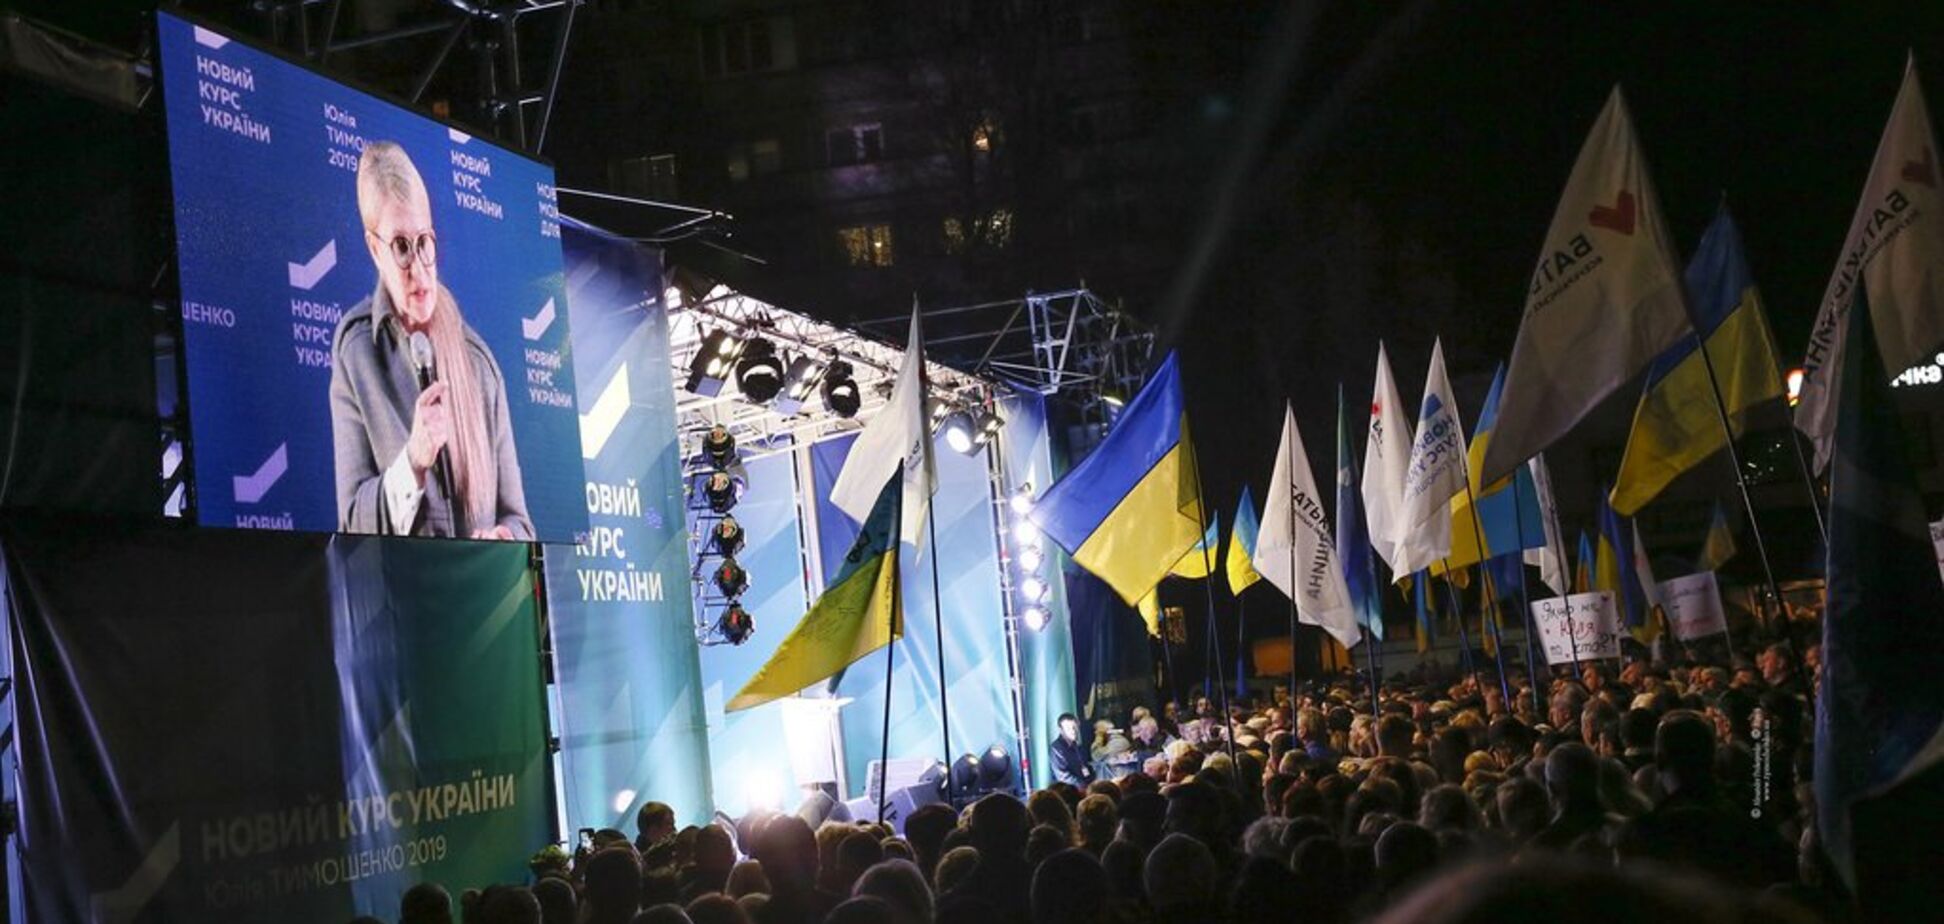 Тимошенко: переговоры в формате 'Будапешт плюс' - первый шаг к миру